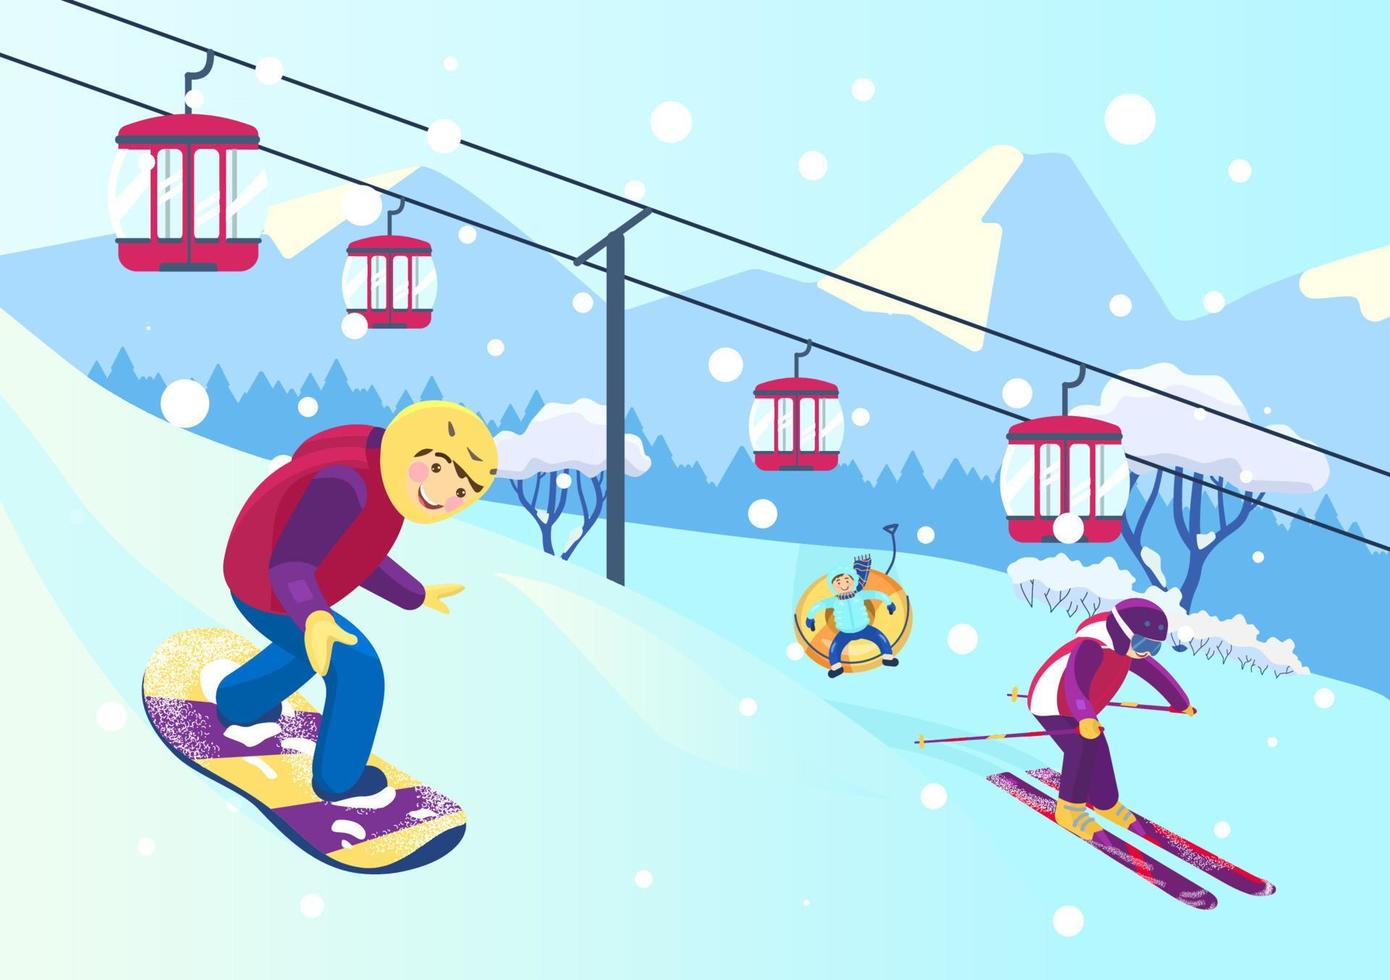 ilustración vectorial de la ladera de la montaña con gente haciendo diferentes deportes de invierno. snowboard, esquí, snow tubing. teleférico. paisaje de montañas nevadas. vector